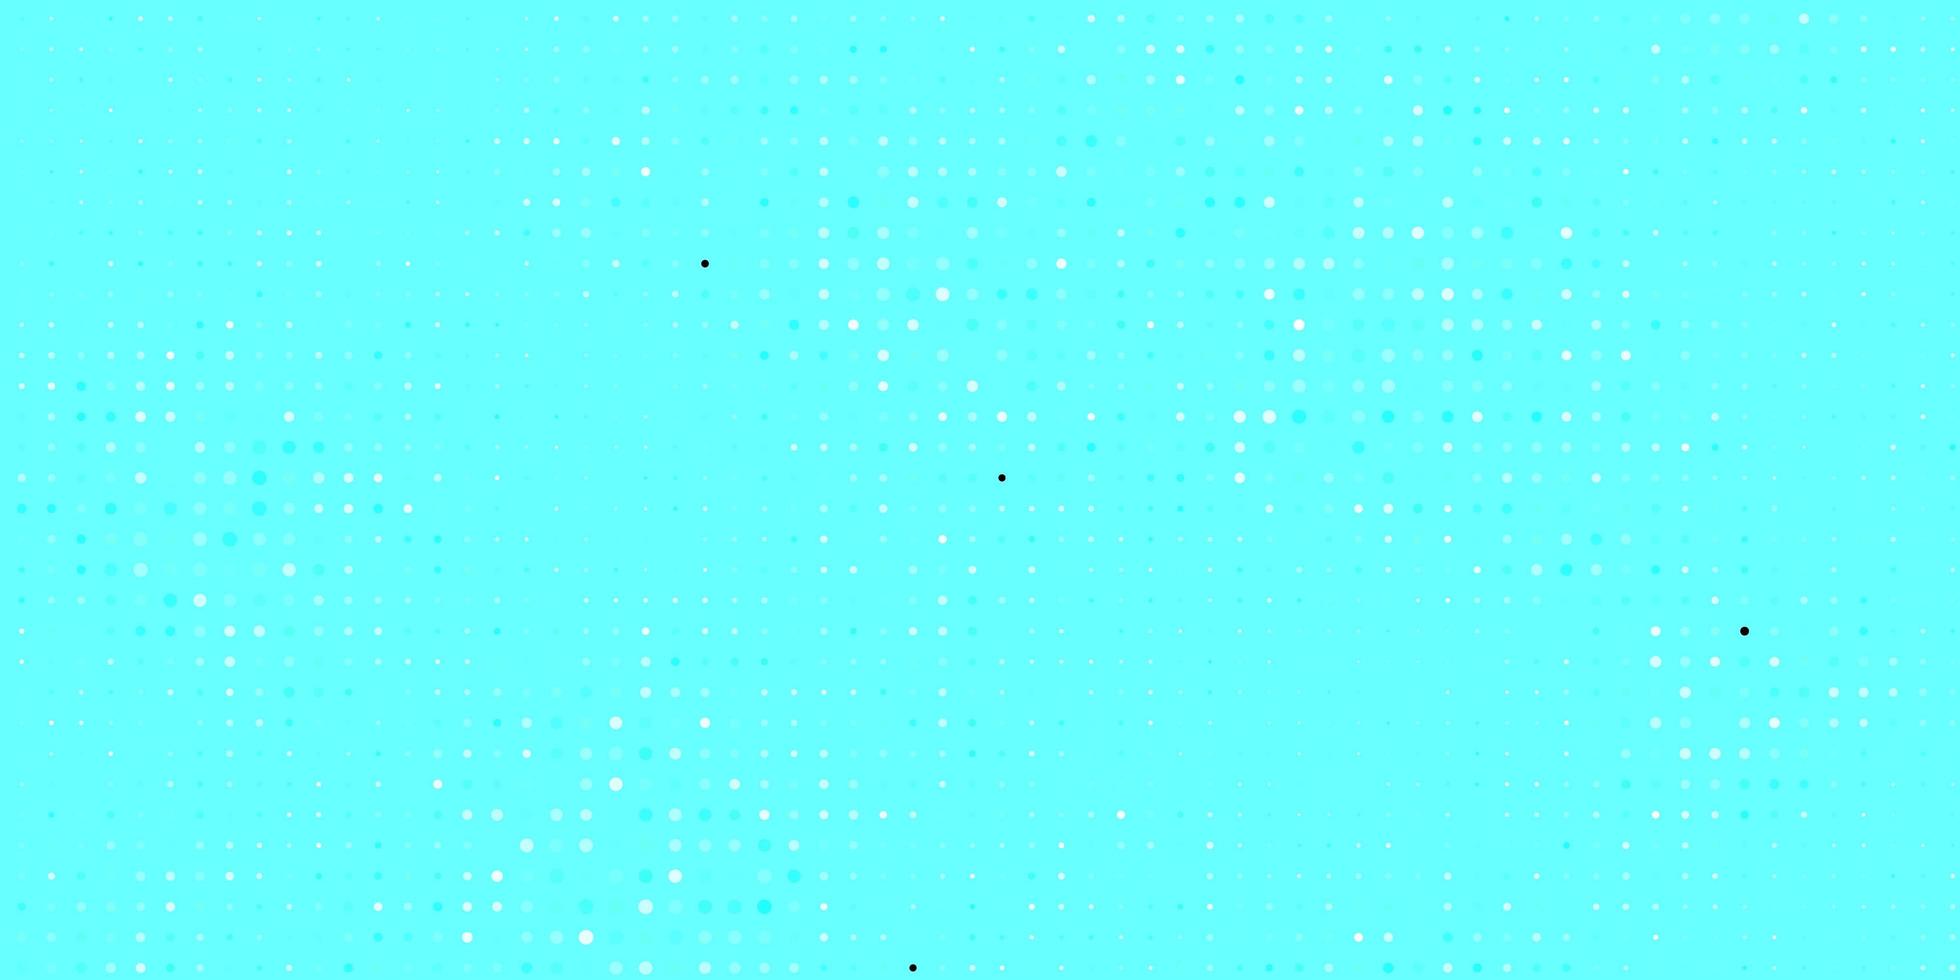 Fondo de vector azul claro con burbujas Ilustración abstracta moderna con formas de círculo de colores nueva plantilla para un libro de marca